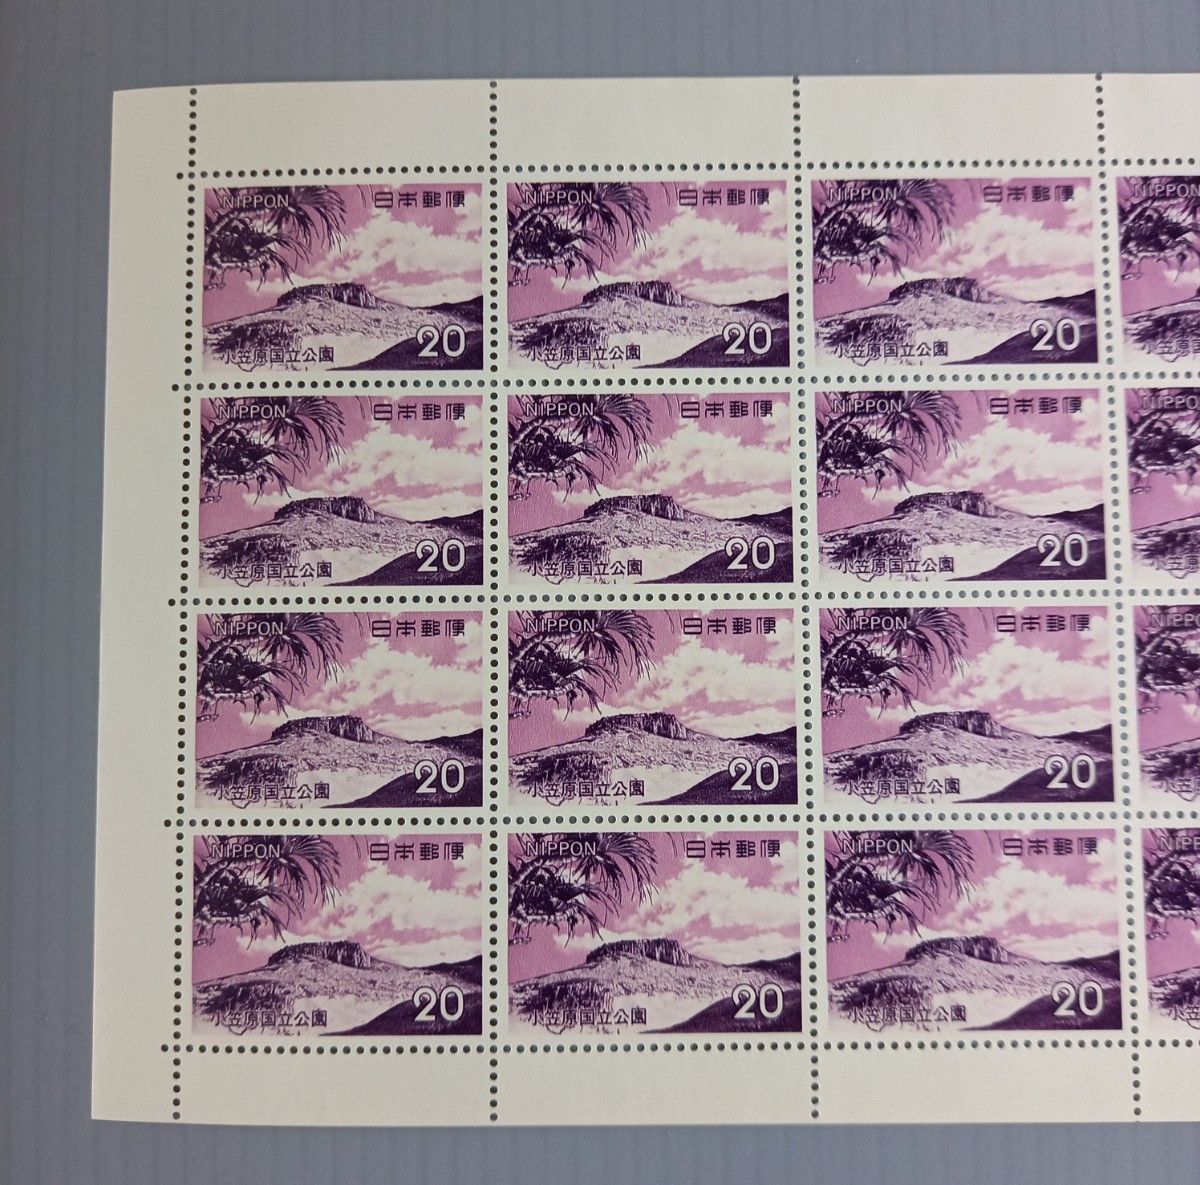 【 国立公園 】 切手シート 小笠原 国立公園 南島サンゴ礁 未使用 郵便切手 日本郵便 20円 切手の画像2